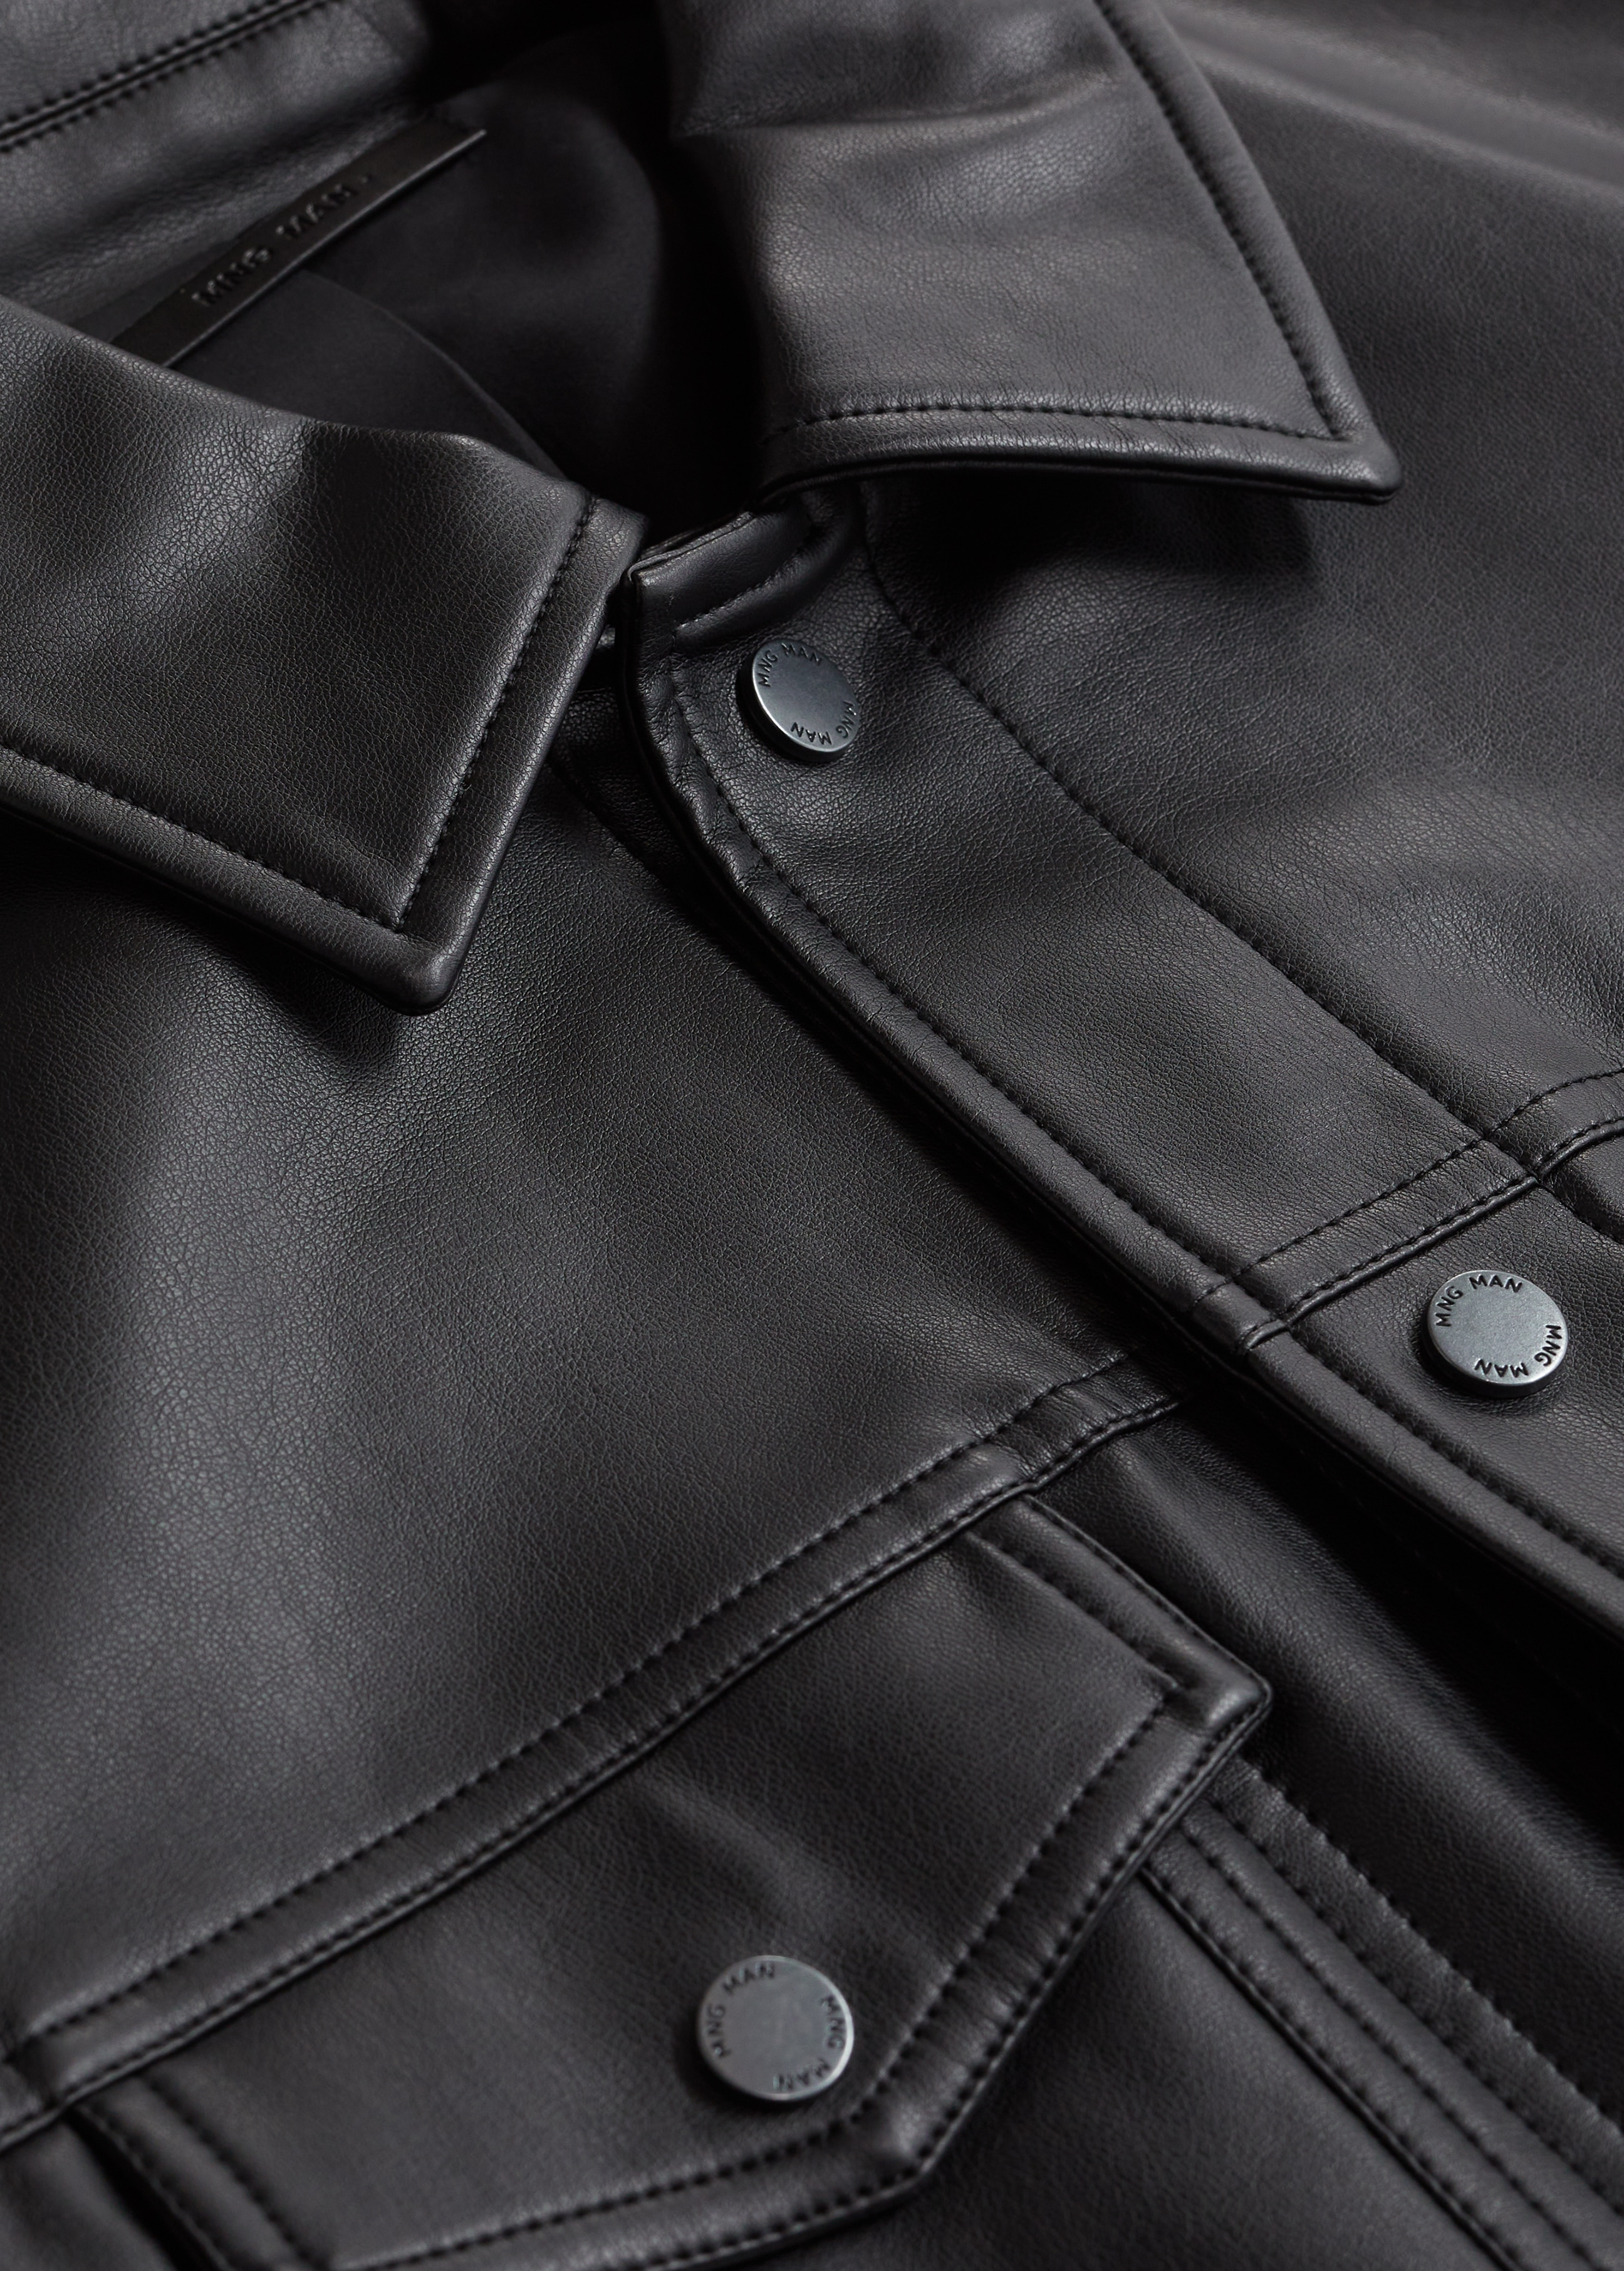 Kabátek koženého vzhledu - Detail zboží 8